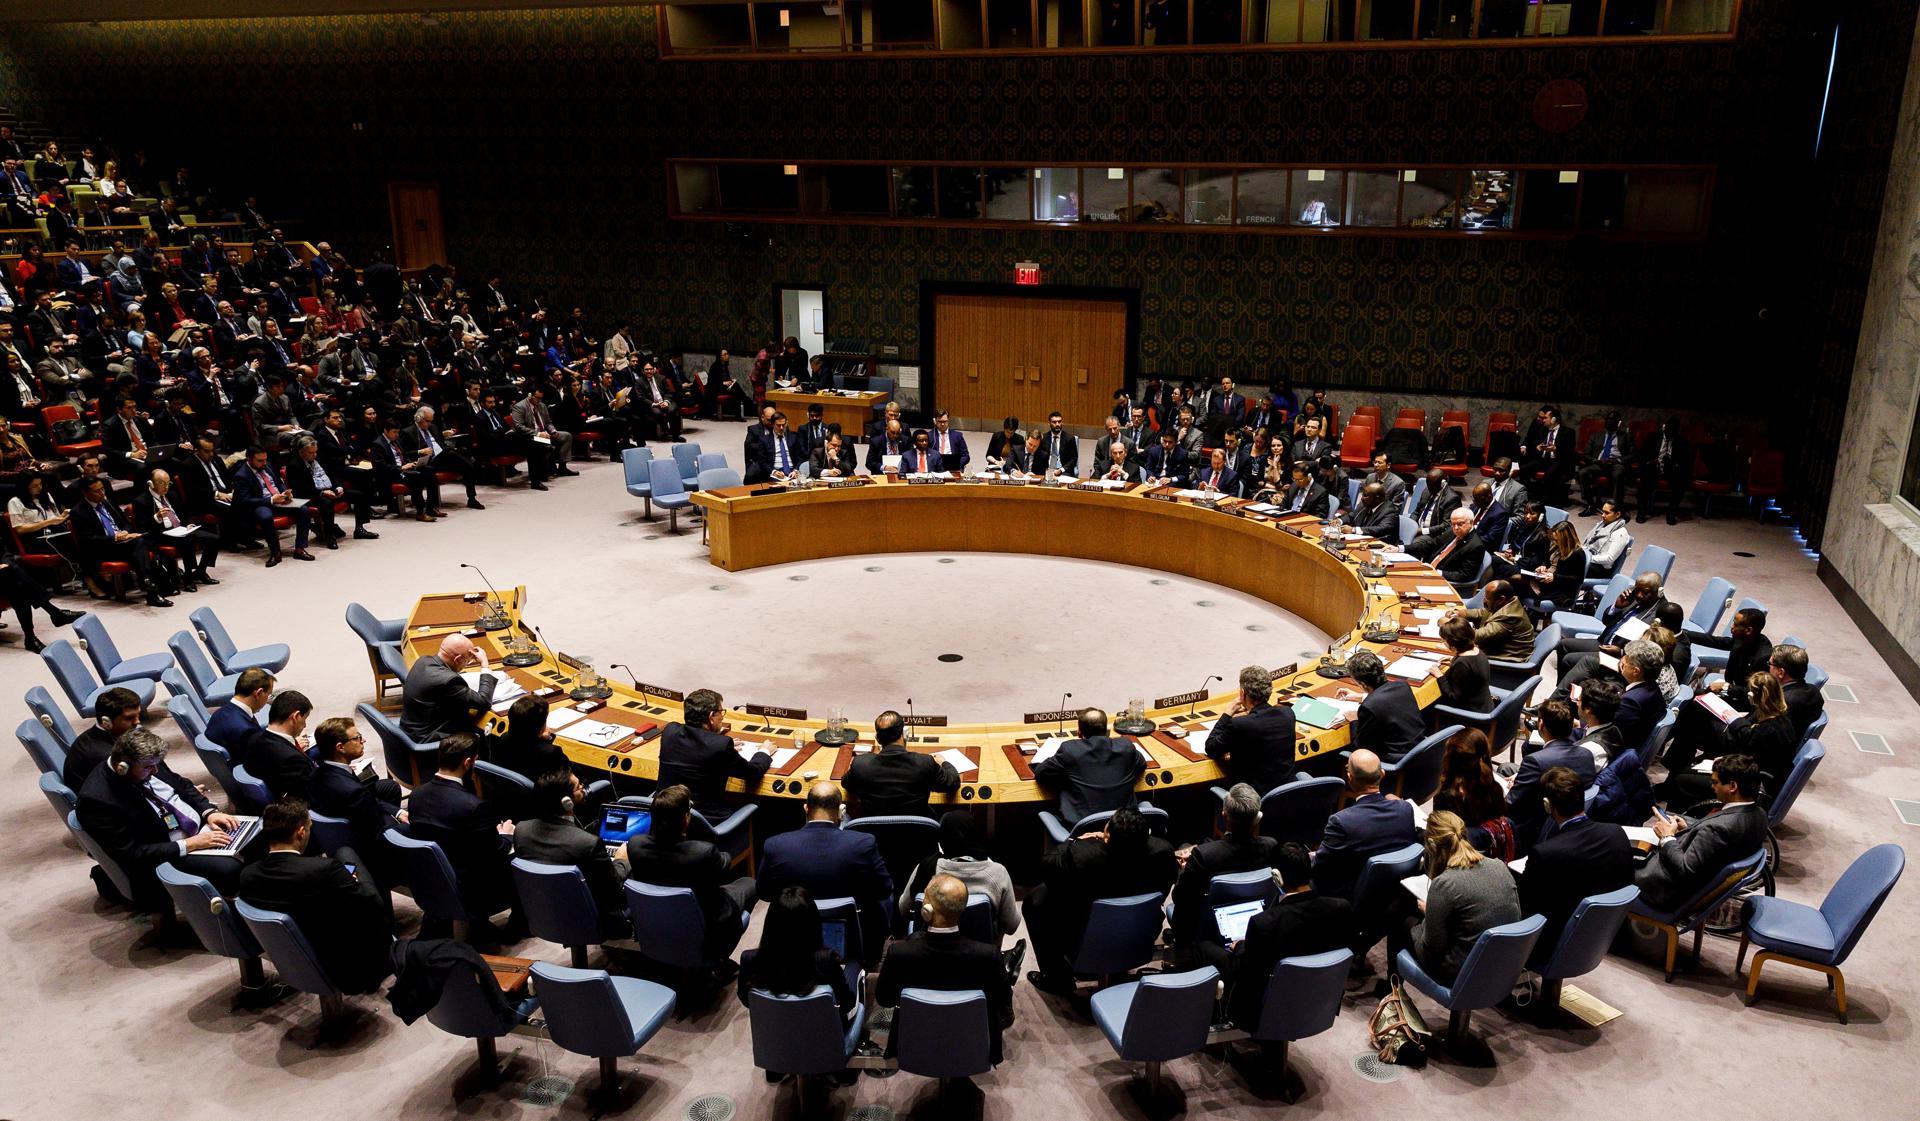 Vista general de una reunión en el Consejo de Seguridad de Naciones Unidas, en una fotografía de archivo. EFE/Justin Lane